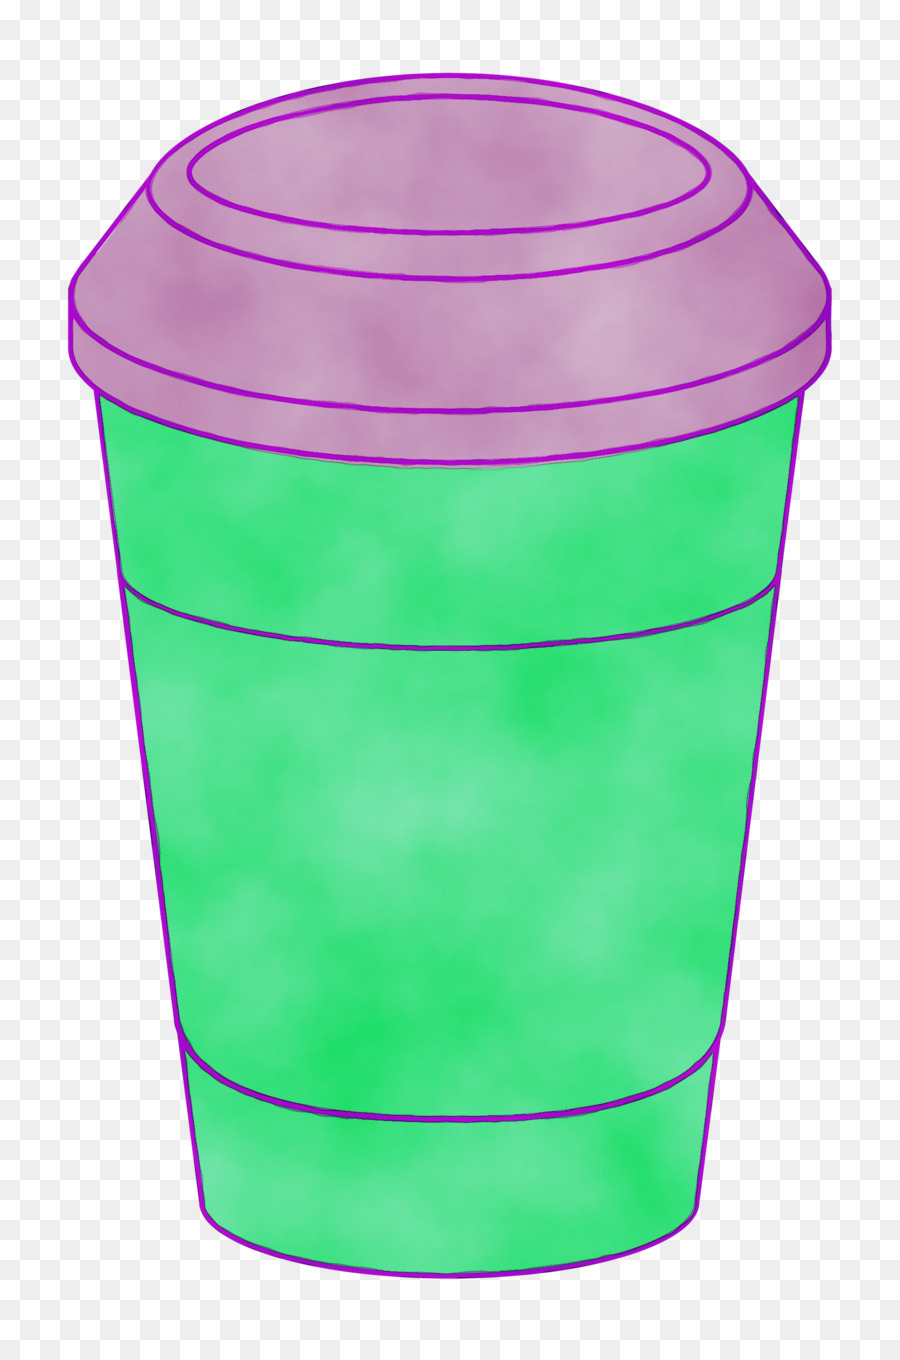 Xi lanh nhựa Cup màu xanh lá cây - 